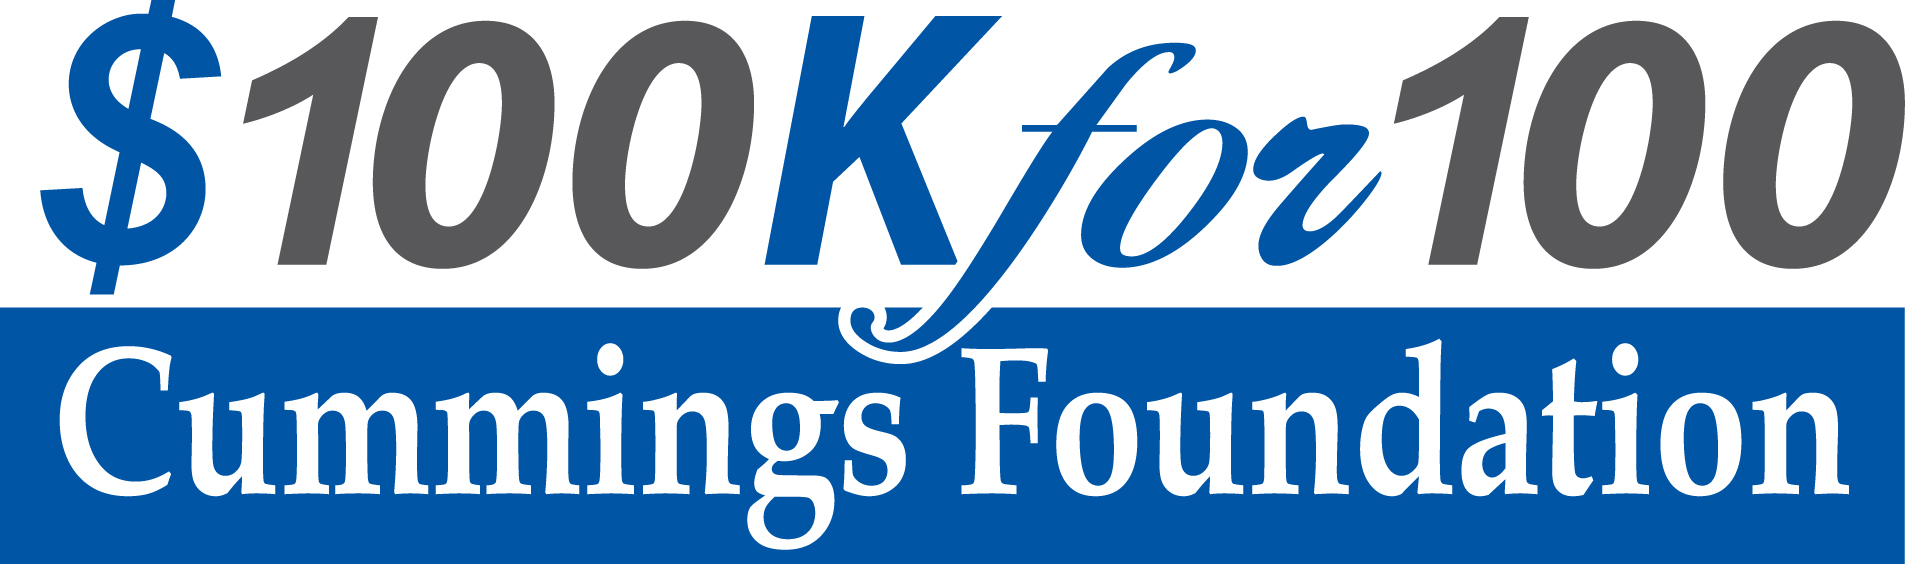 100Kfor100 logo.jpg